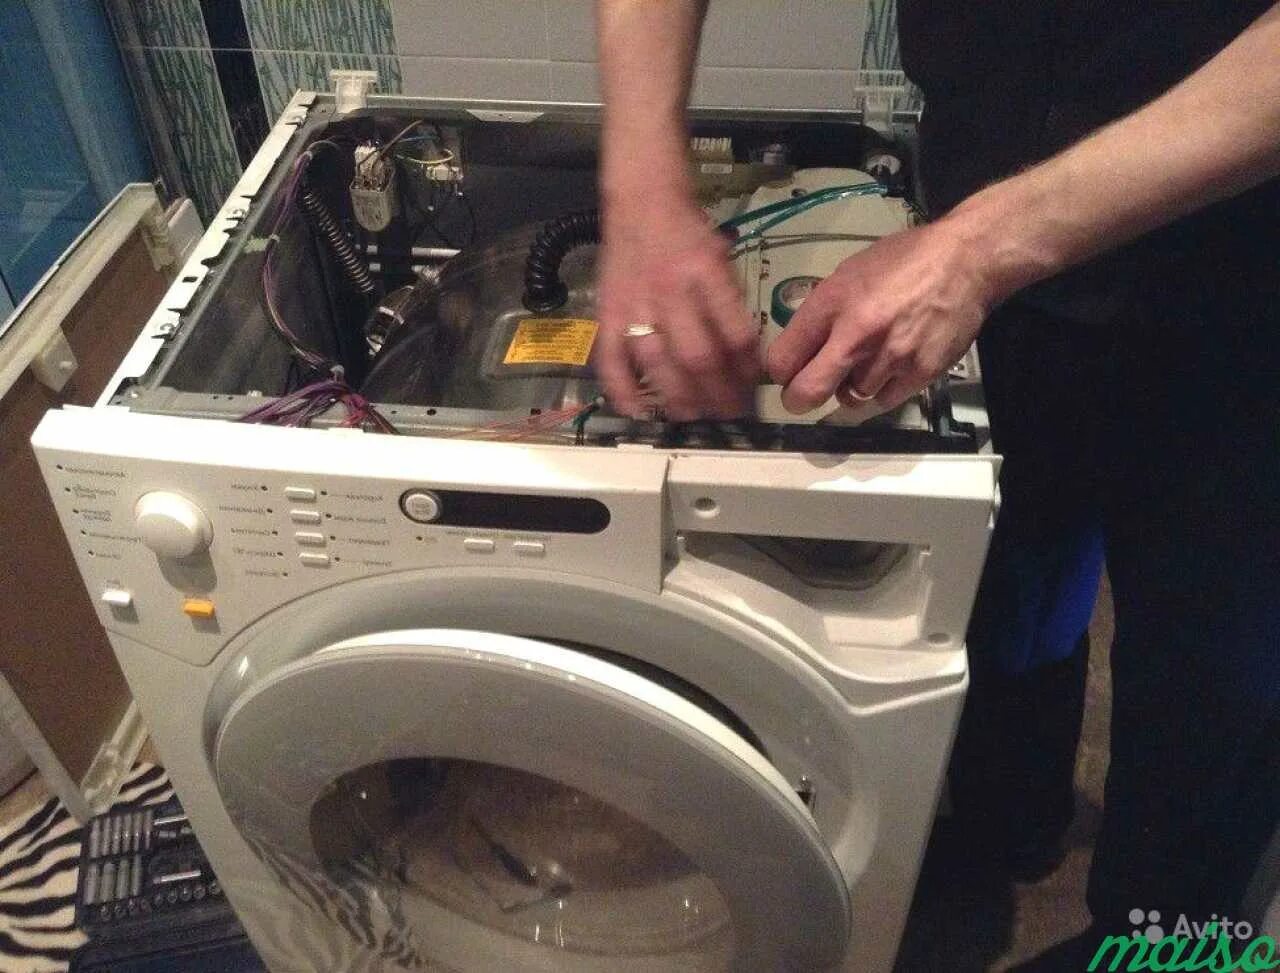 Ремонт стиральных машин. Мастер по ремонту стиральных машинок. Мастер по стиральным машинам. Сломалась стиральная машина. Ремонт com стиральных машин